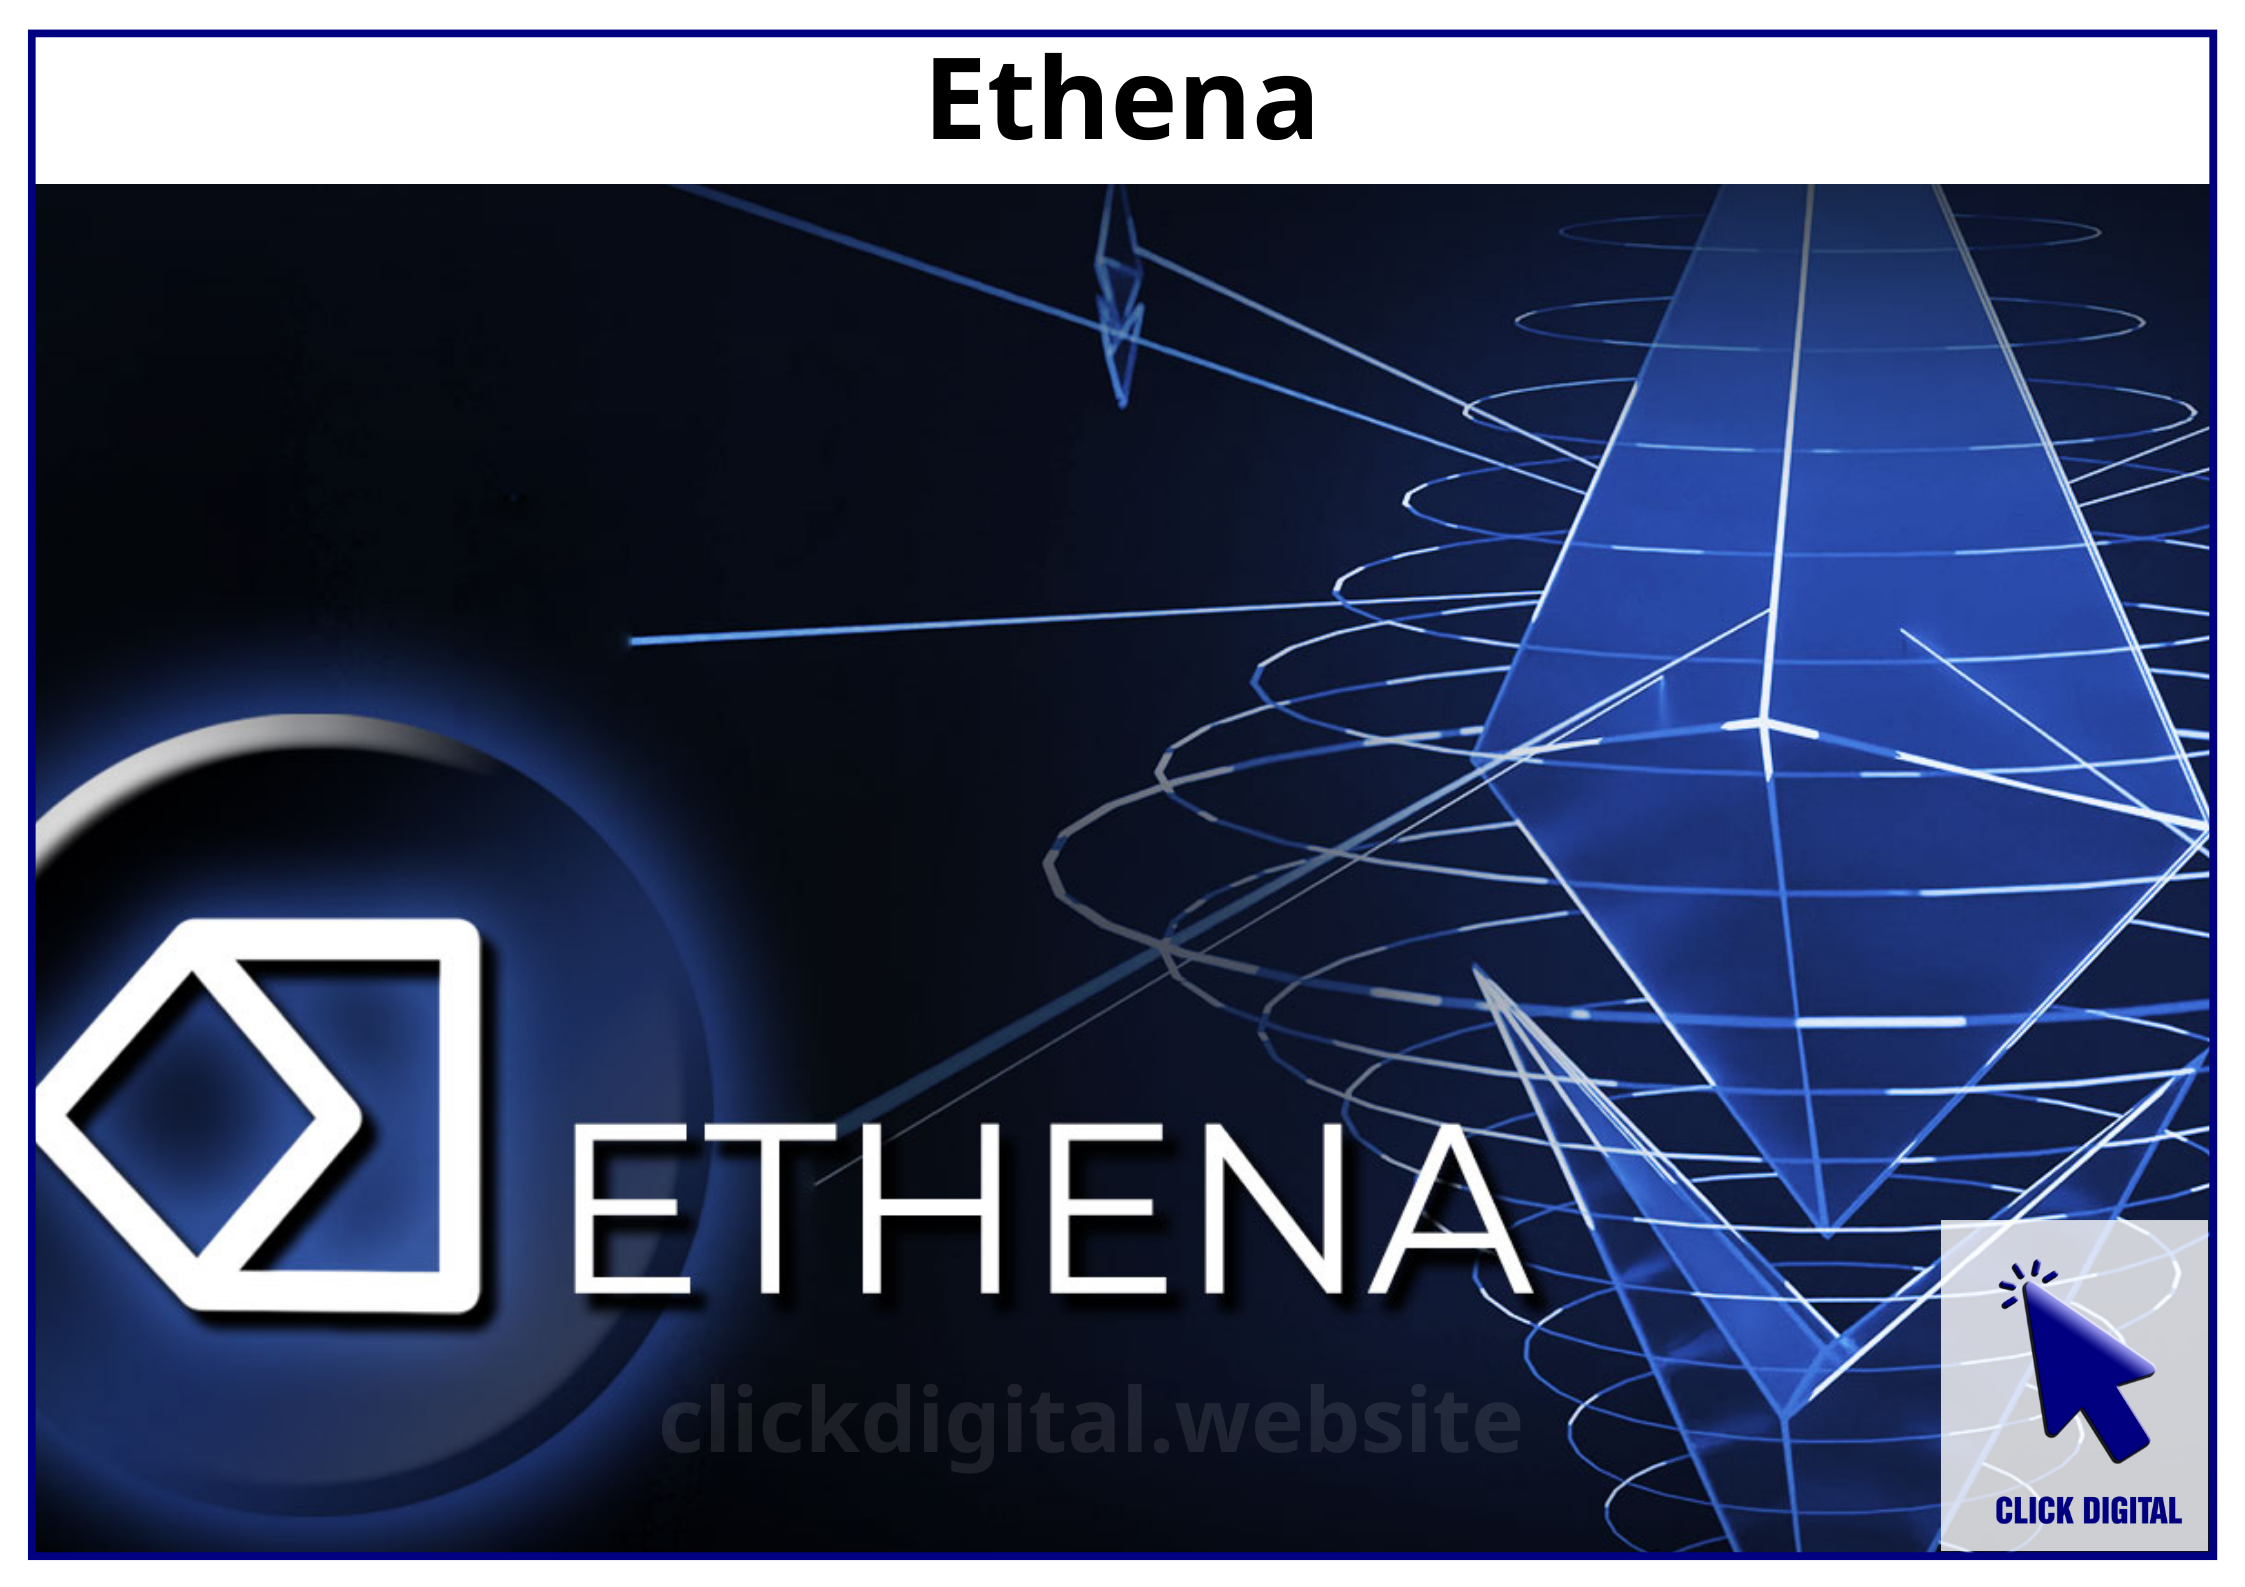 Dự án Ethena: Sản phẩm, cơ hội, rủi ro, đánh giá